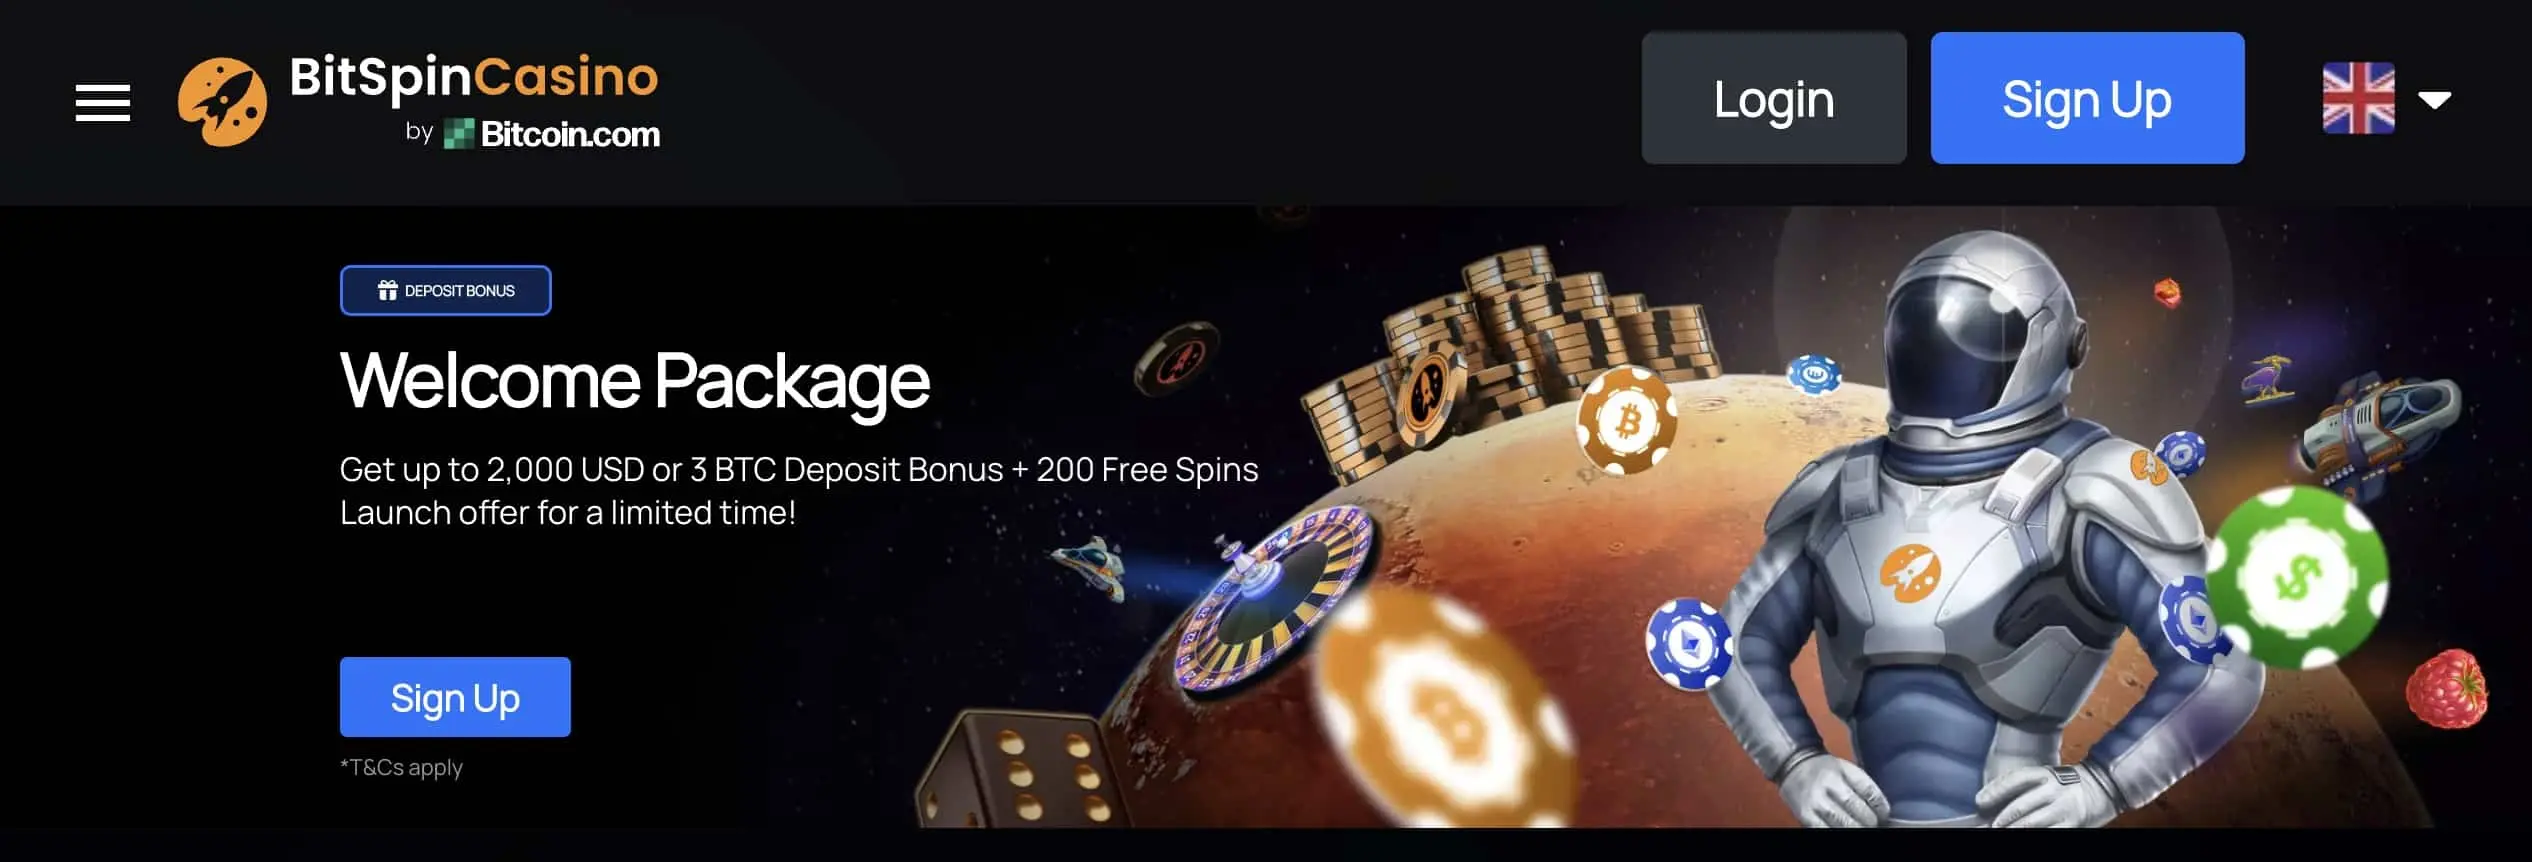 Bitspin casino homepage